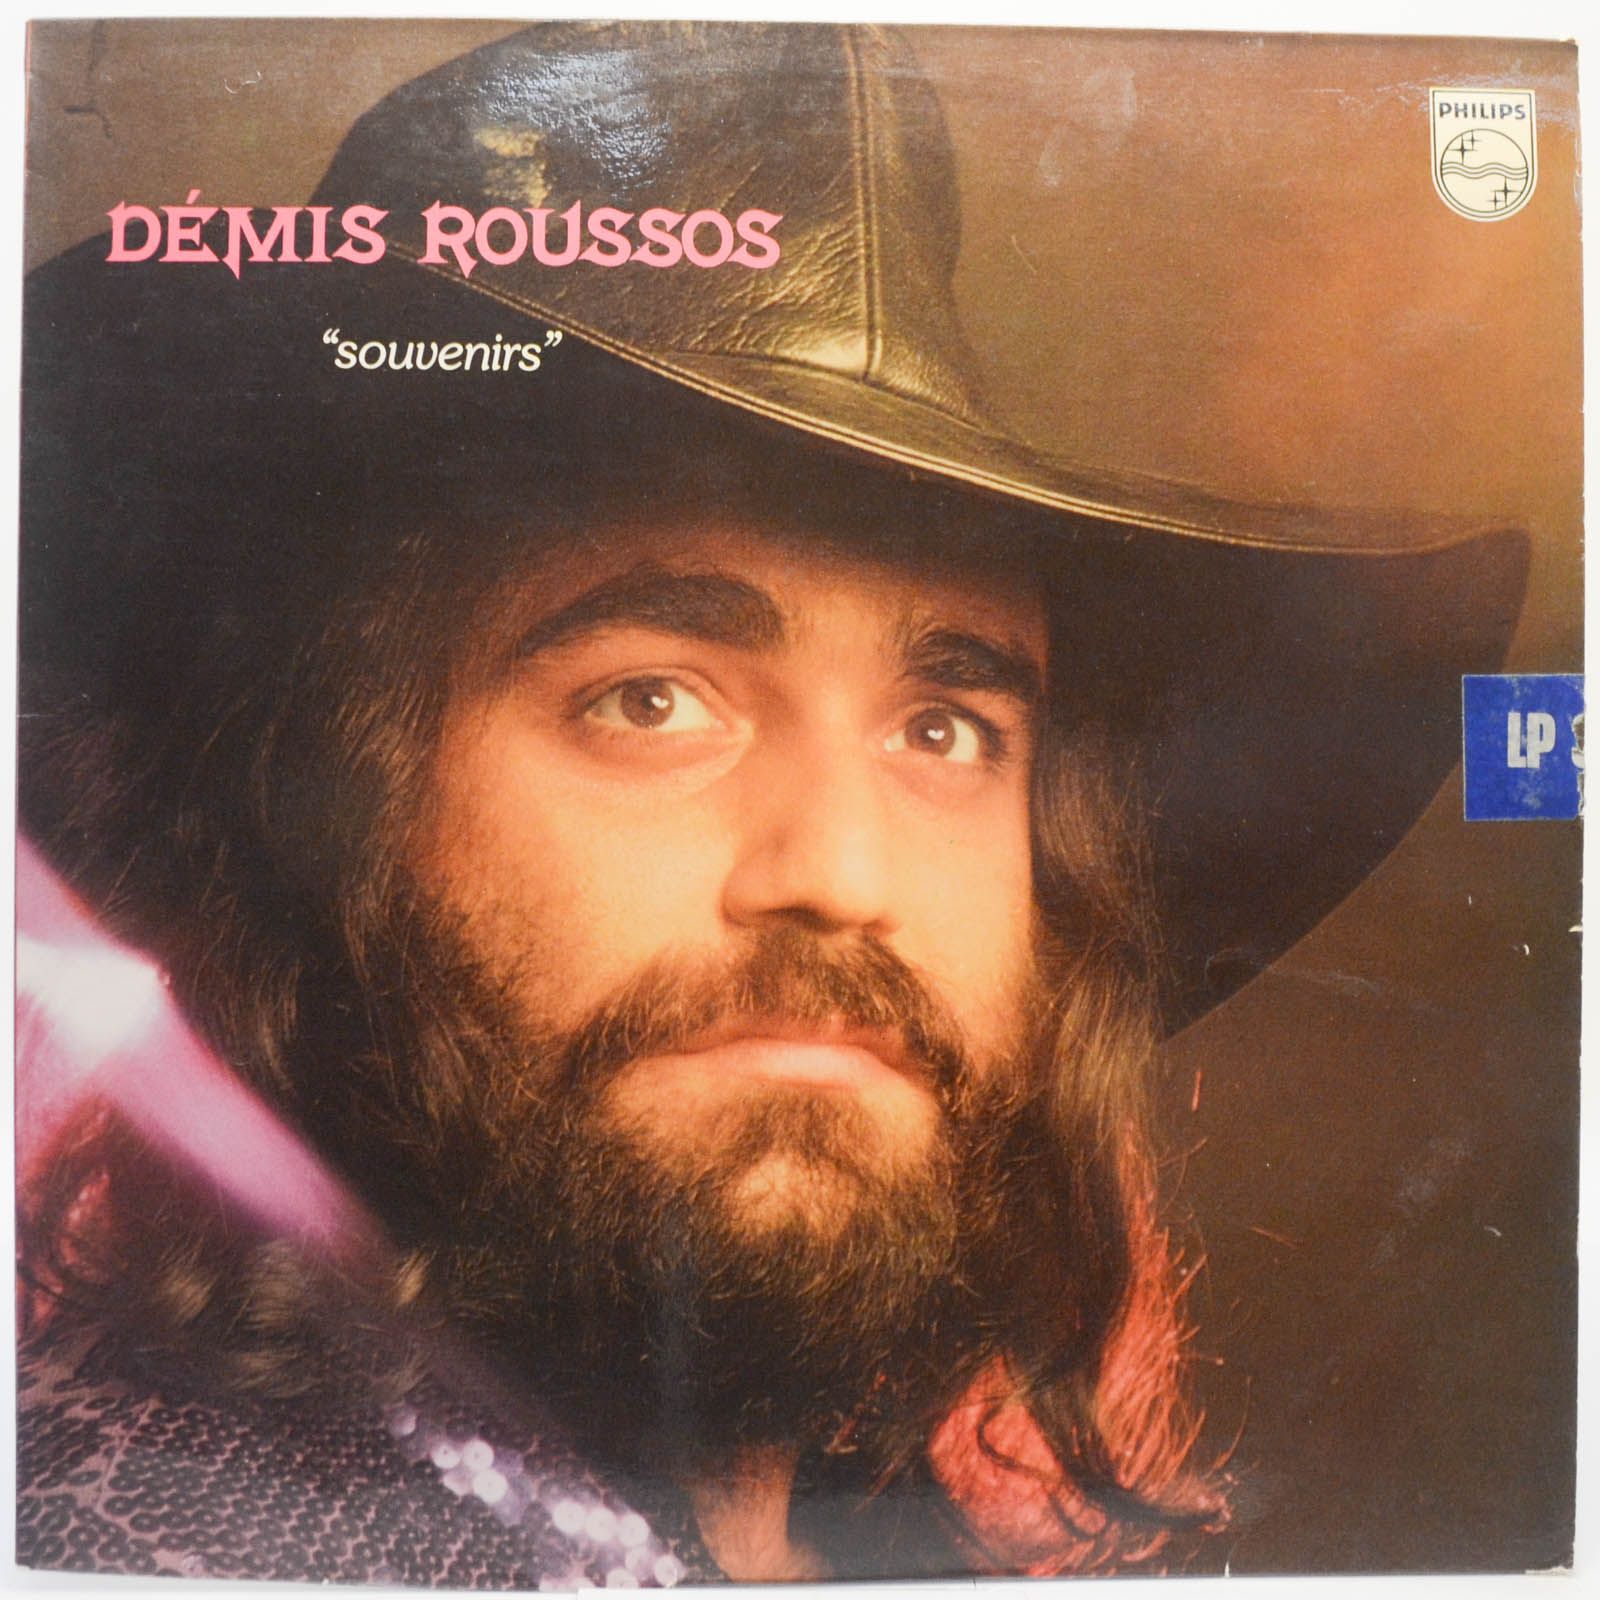 Démis Roussos — Souvenirs (1-st, France), 1975